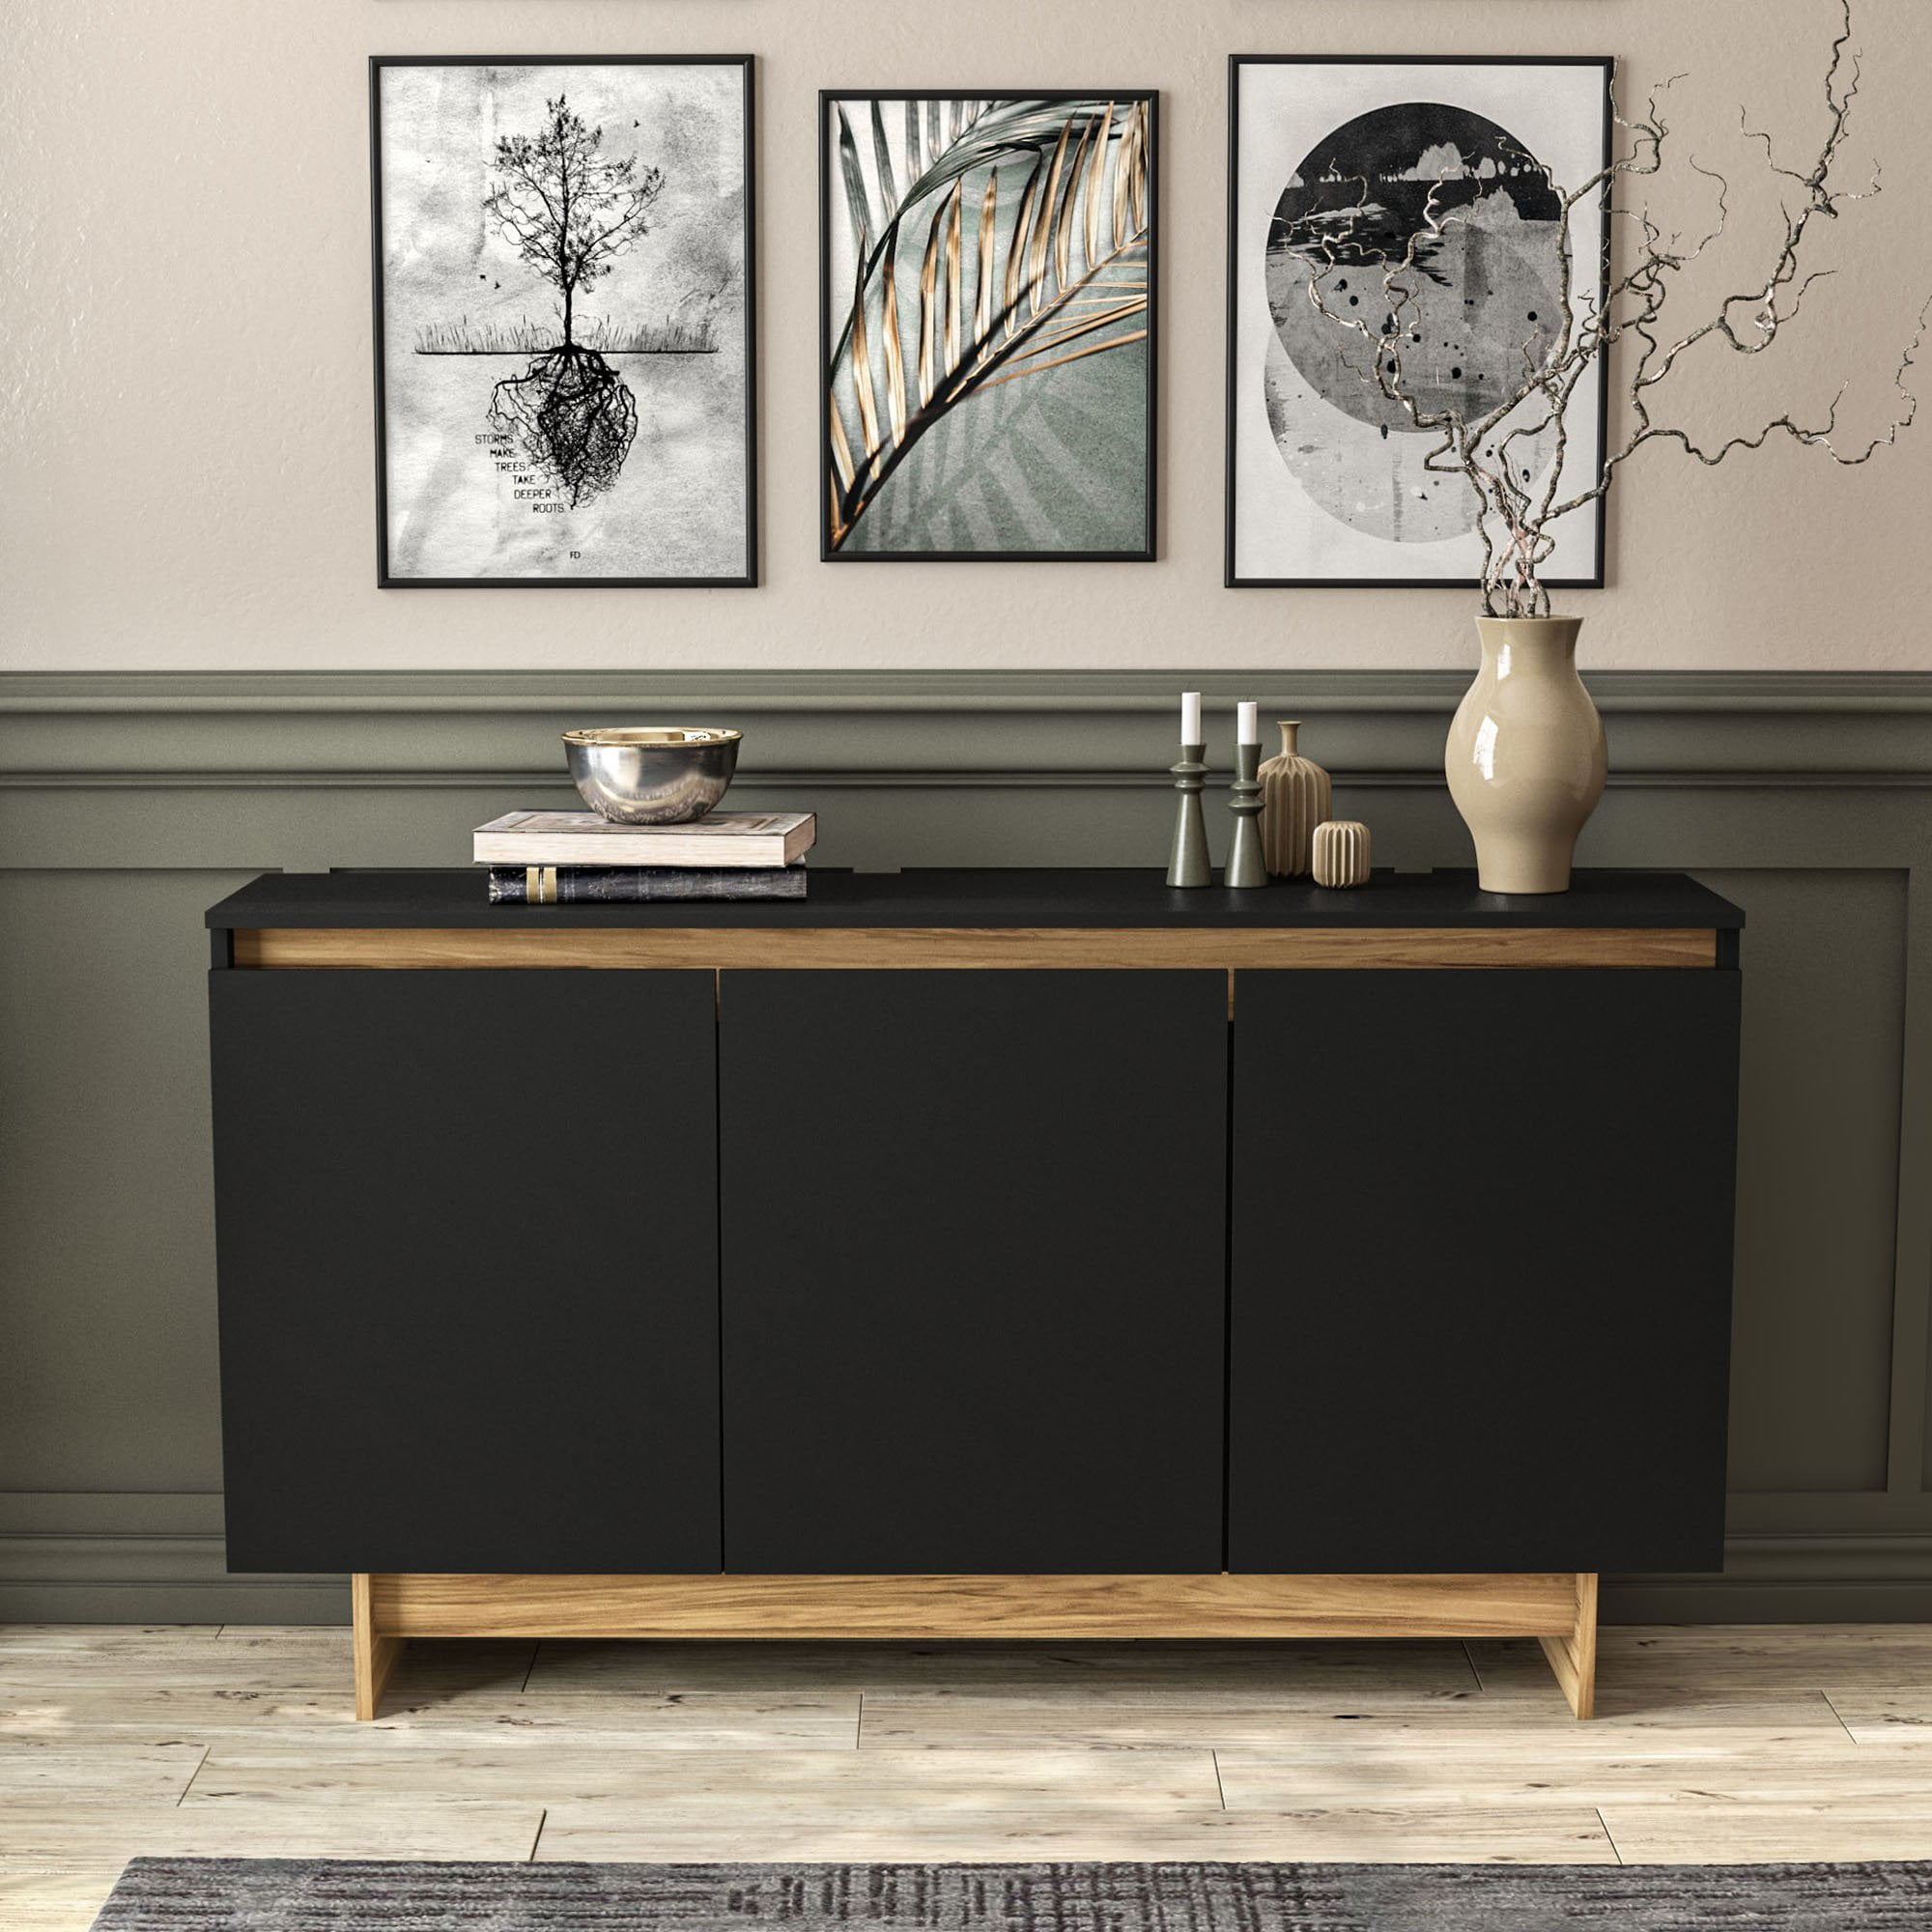 Oak Slate Design Kitchen Utensil Holder Modern Contemporary Style 